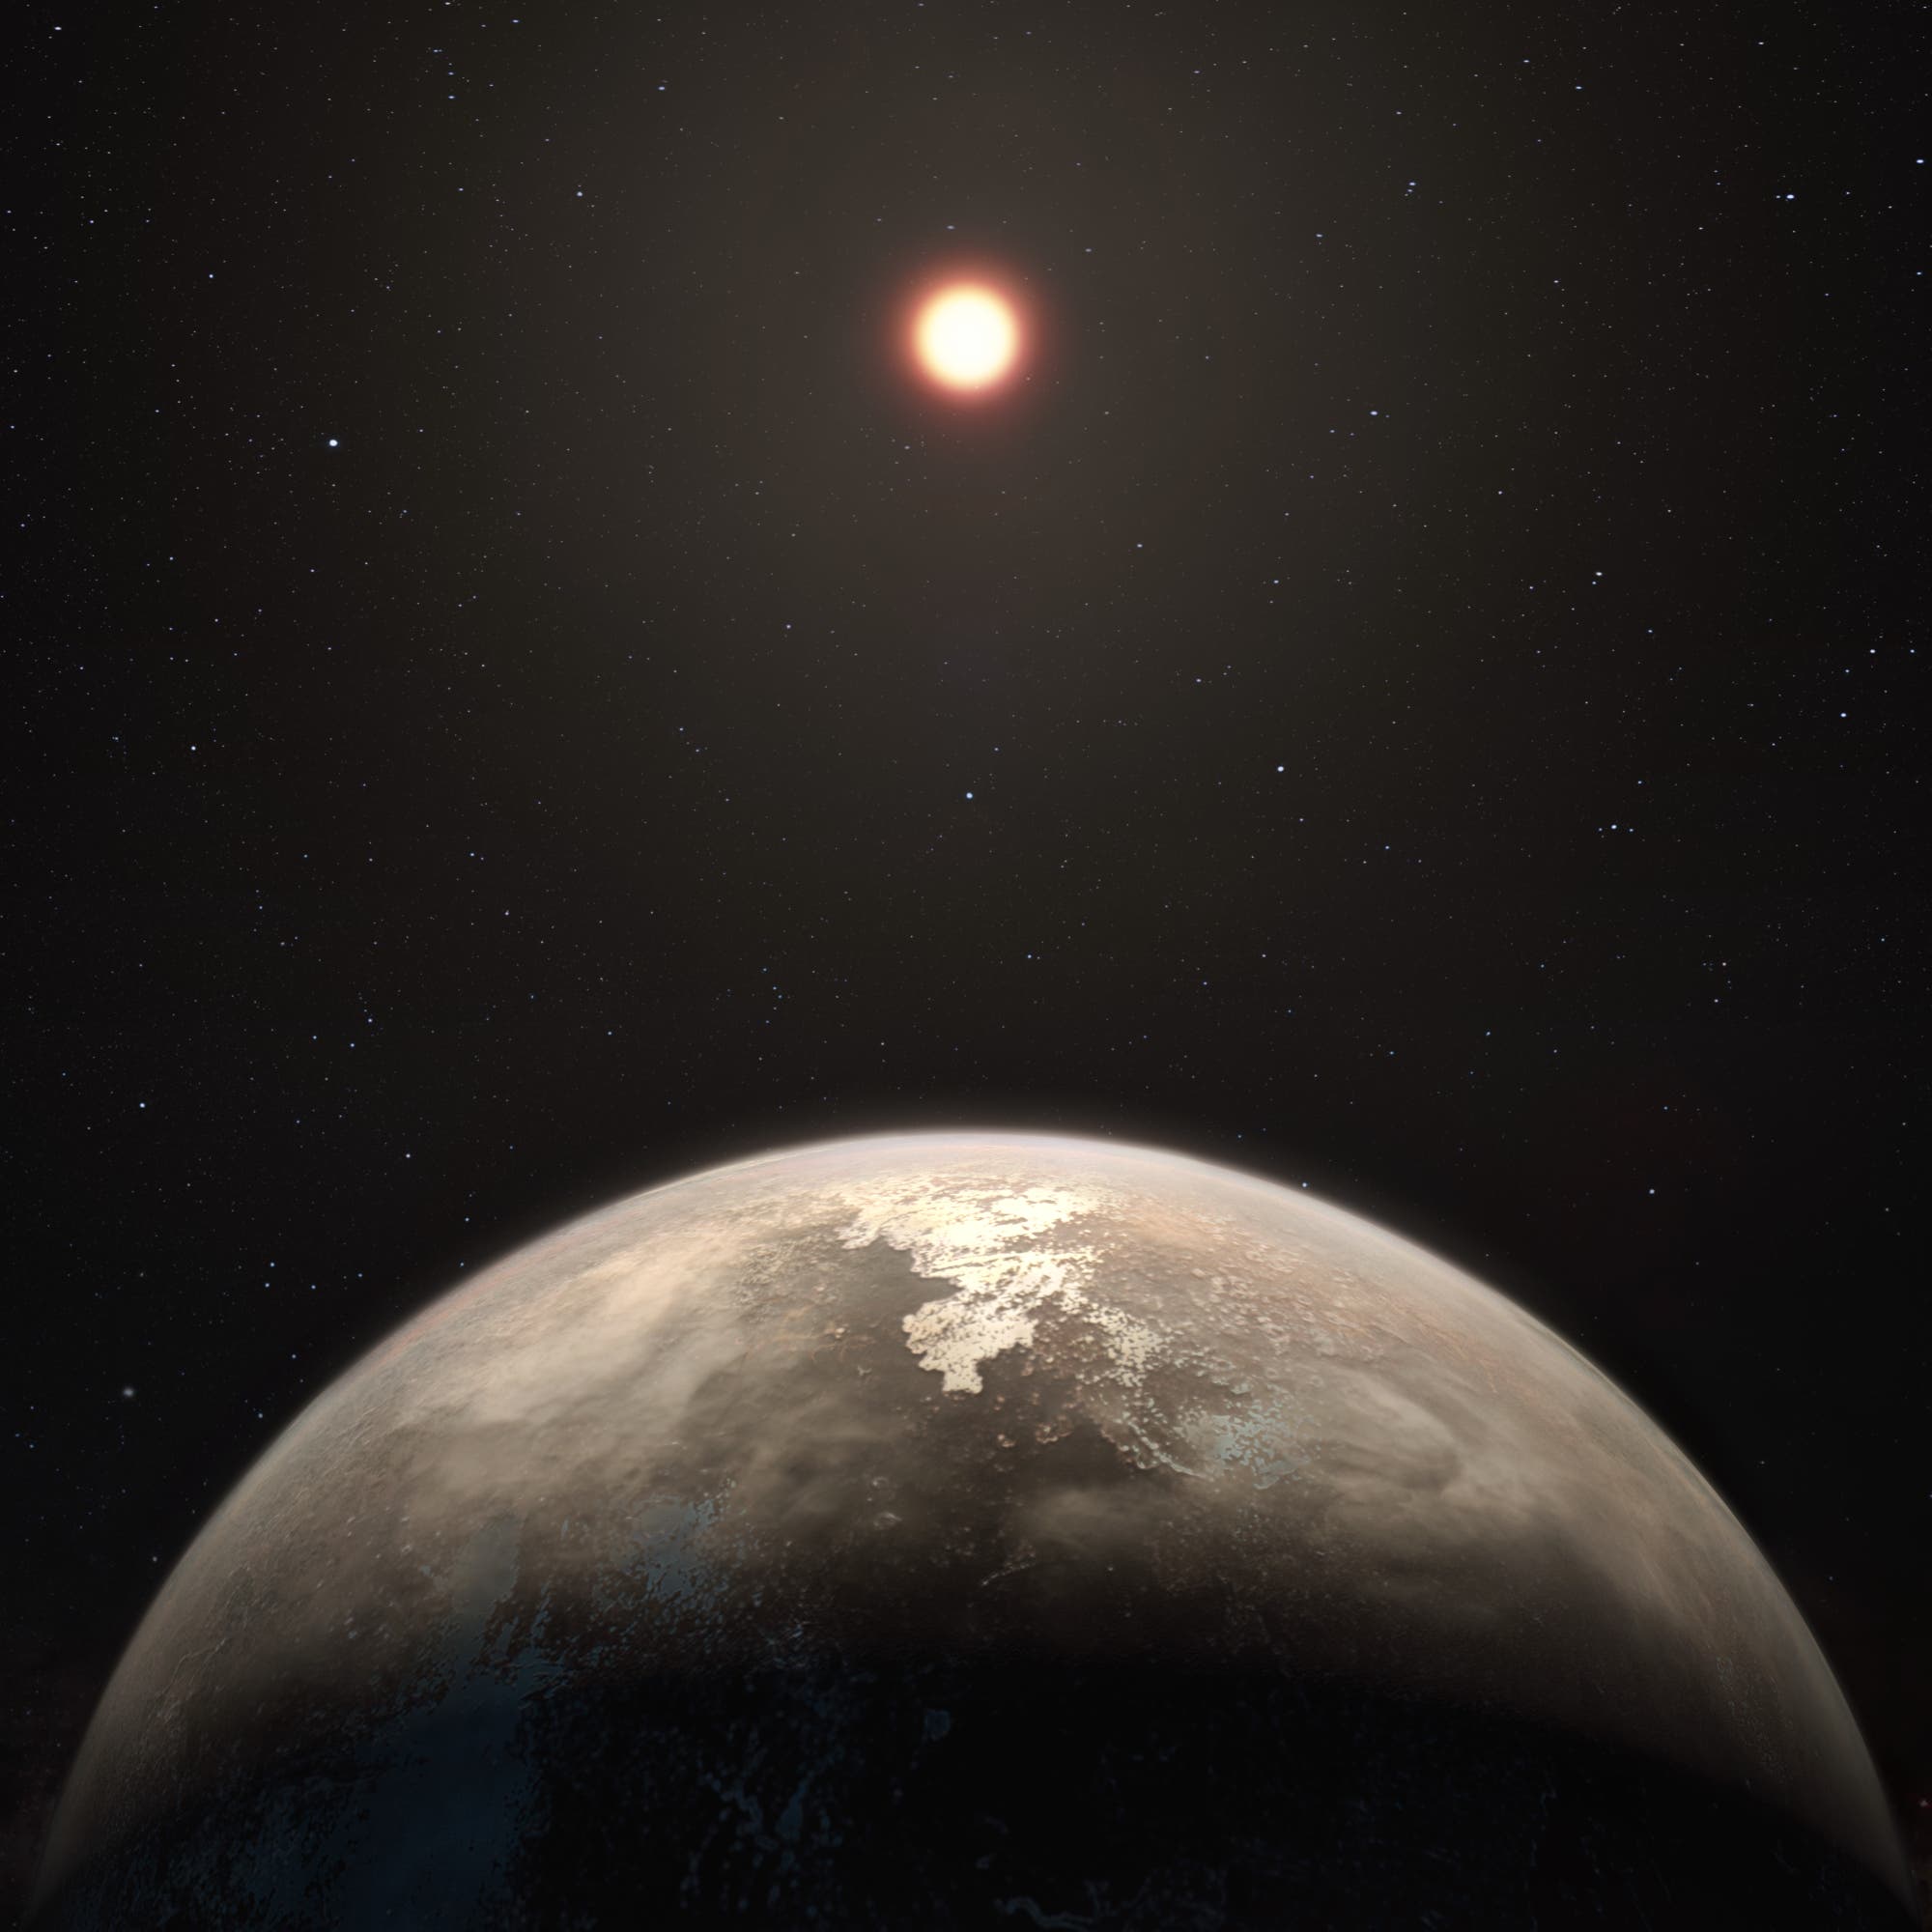 Der Planet Ross 128b im Sternbild Jungfrau (künstlerische Darstellung)